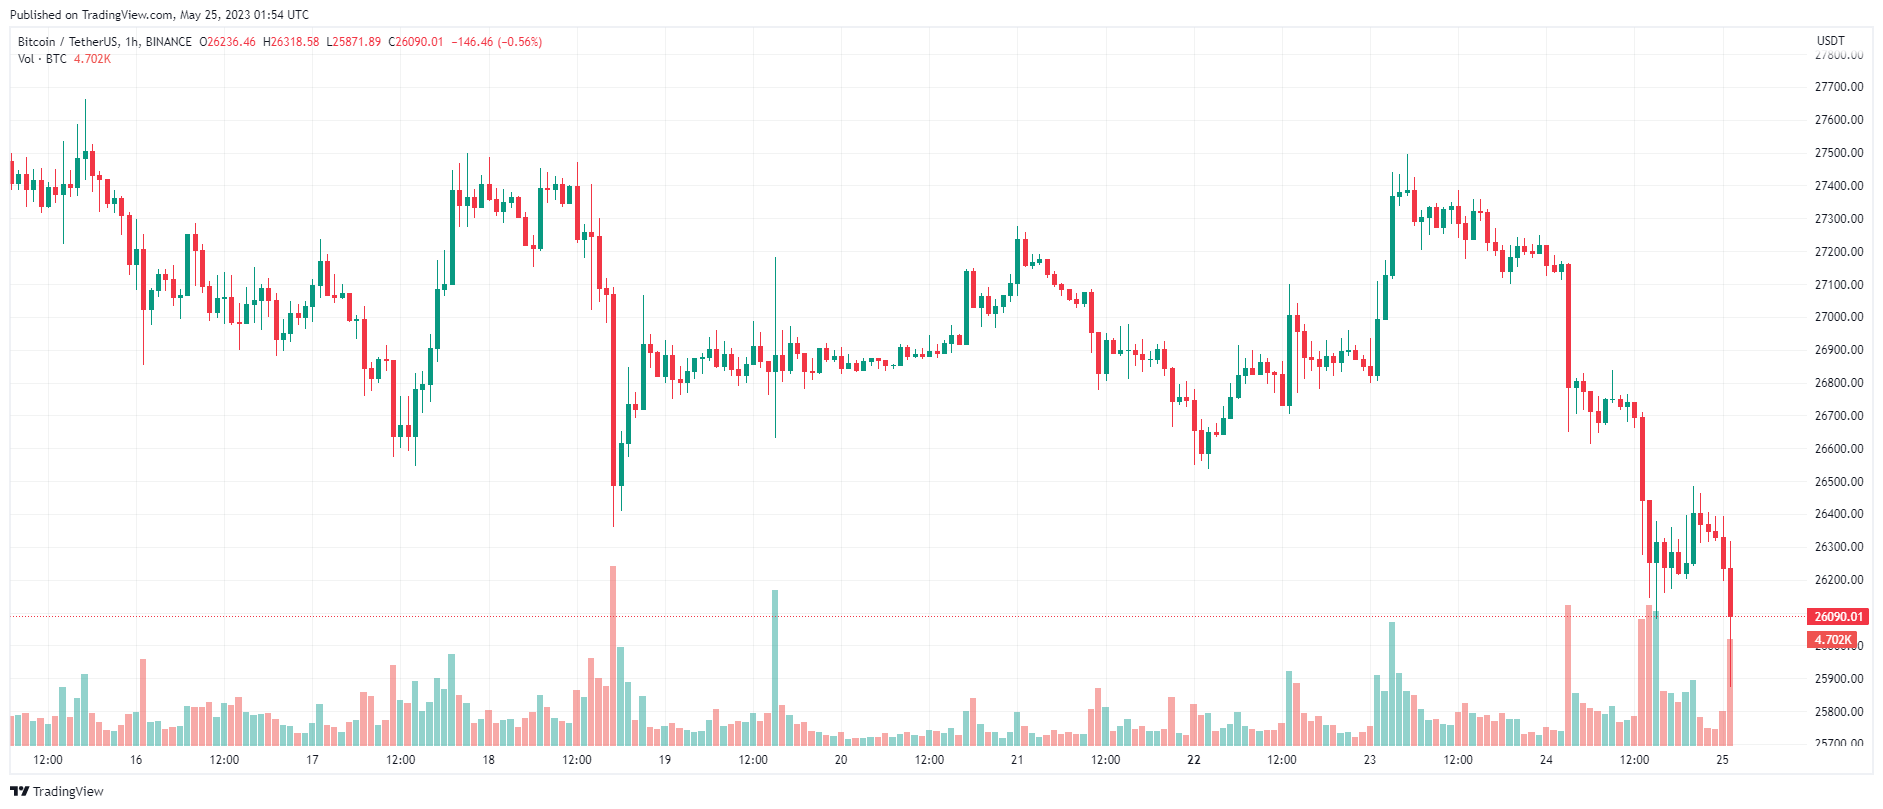 Giá Coin hôm nay 25/05: Bitcoin quay về sát $ 26.000, altcoin và chứng khoán Mỹ đỏ lửa khi thị trường lo ngại kết quả trần nợ không thuận lợi